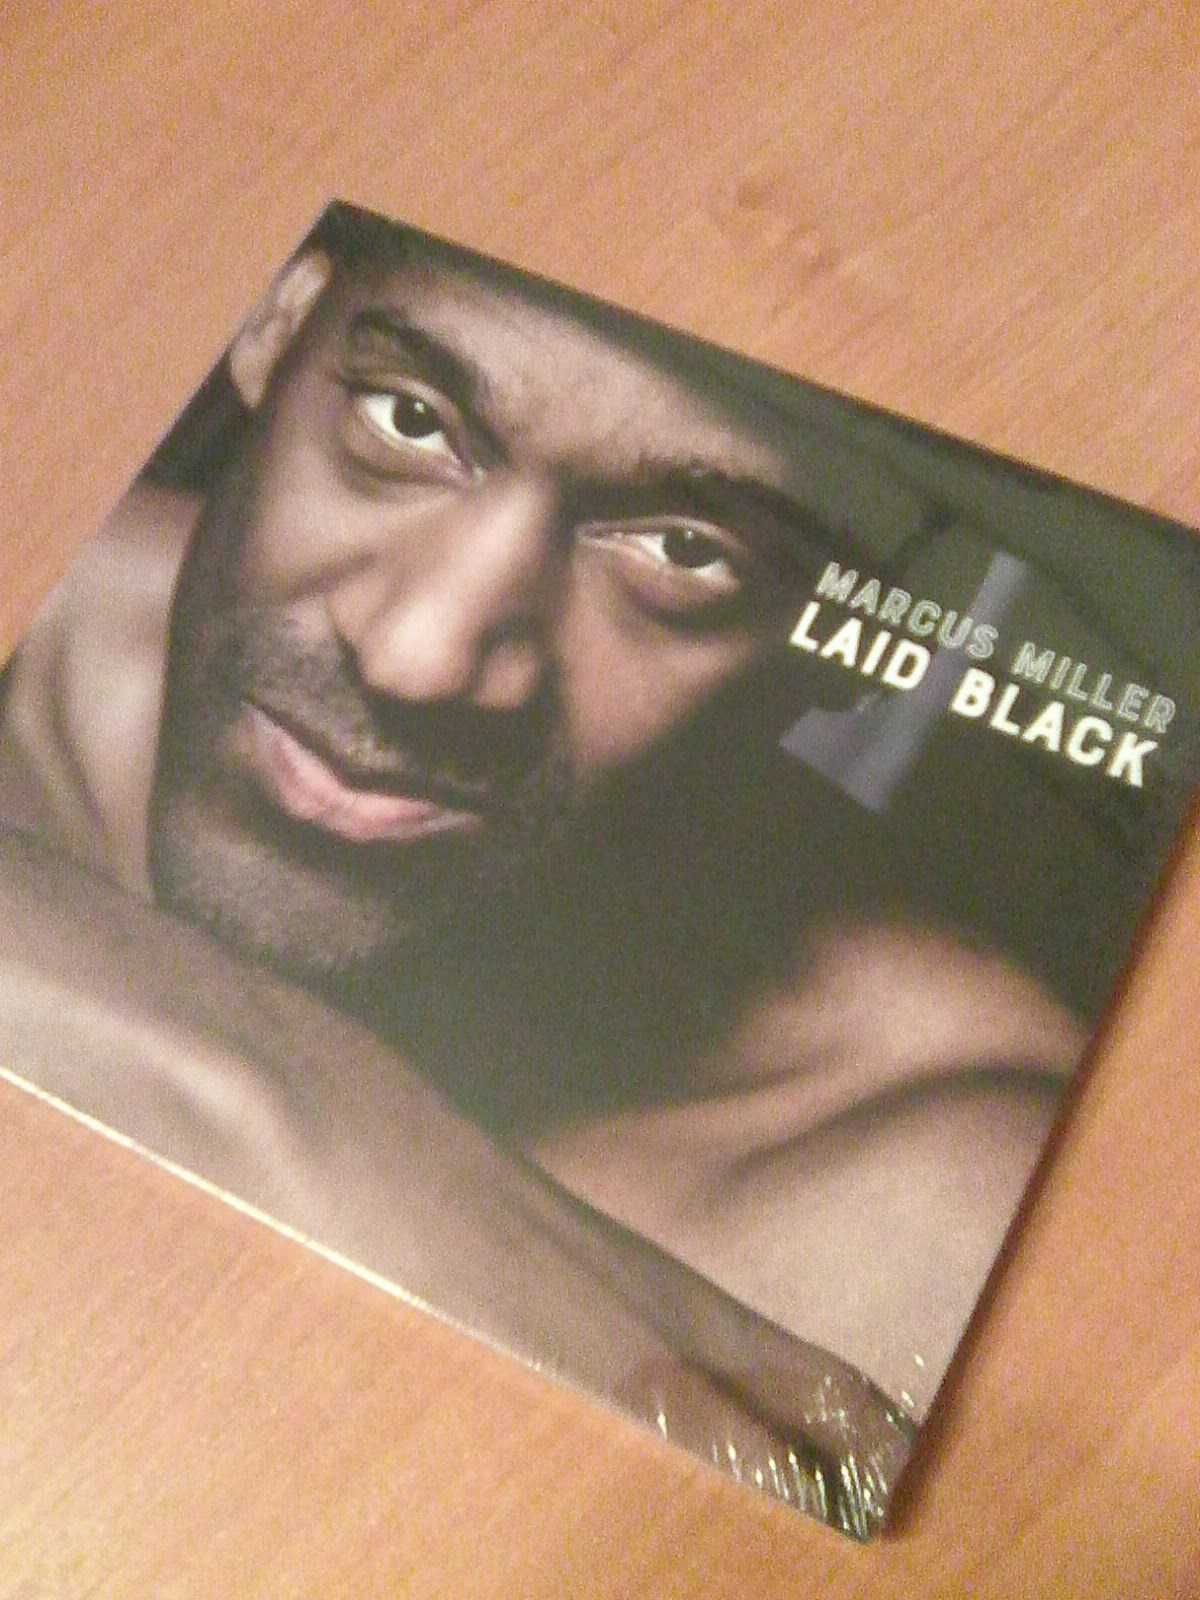 Marcus Miller Laid Black CD